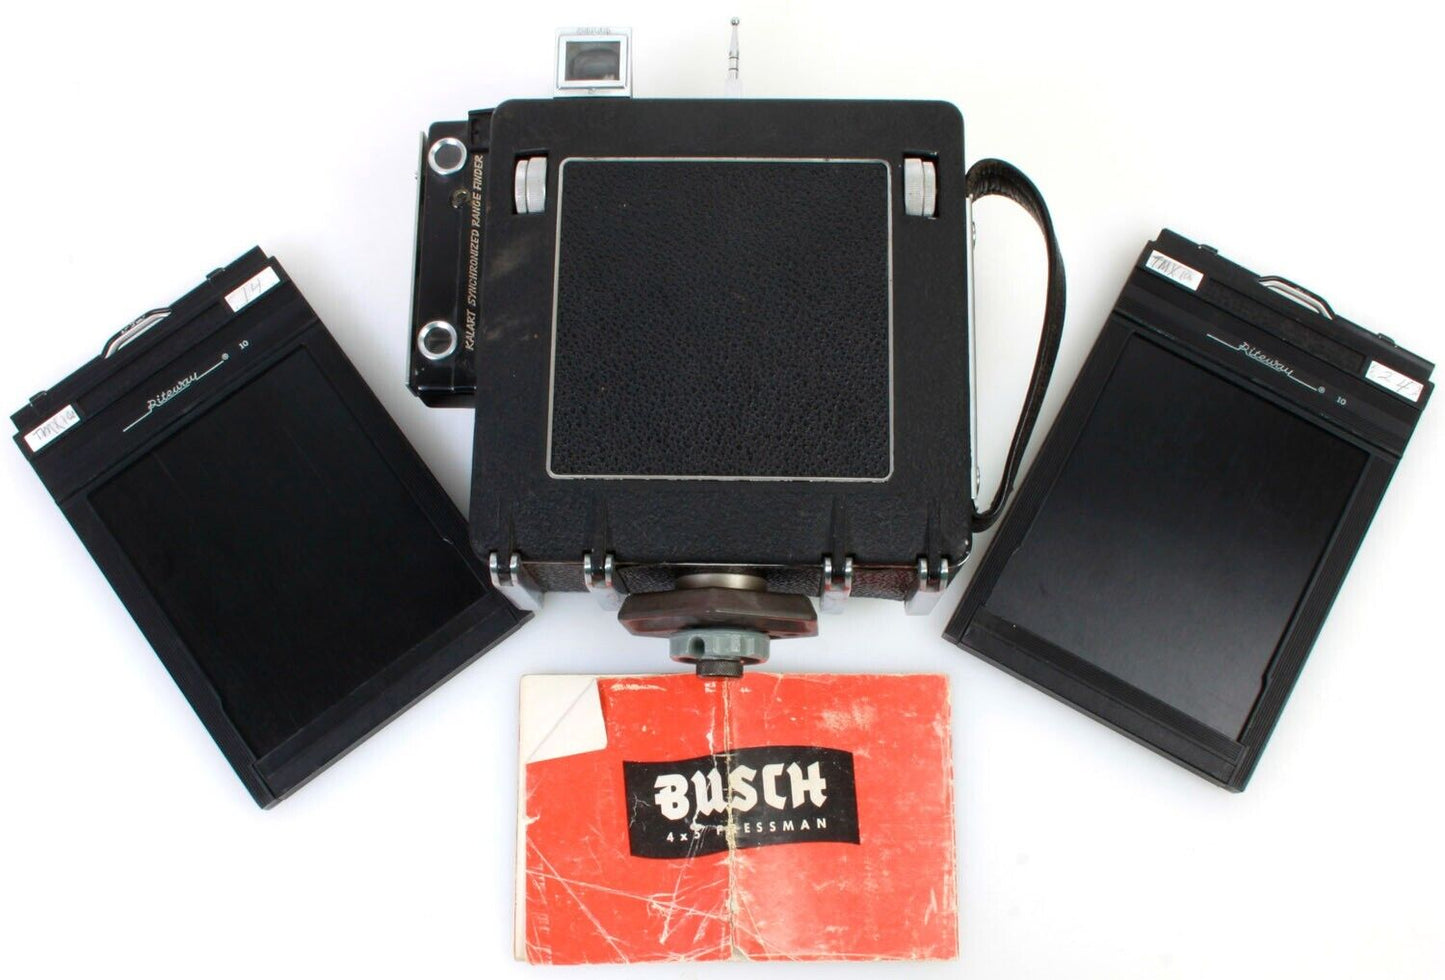 Busch Pressman 4x5 Folding Camera w/135mm f/4.7 Lens & 2 Backs